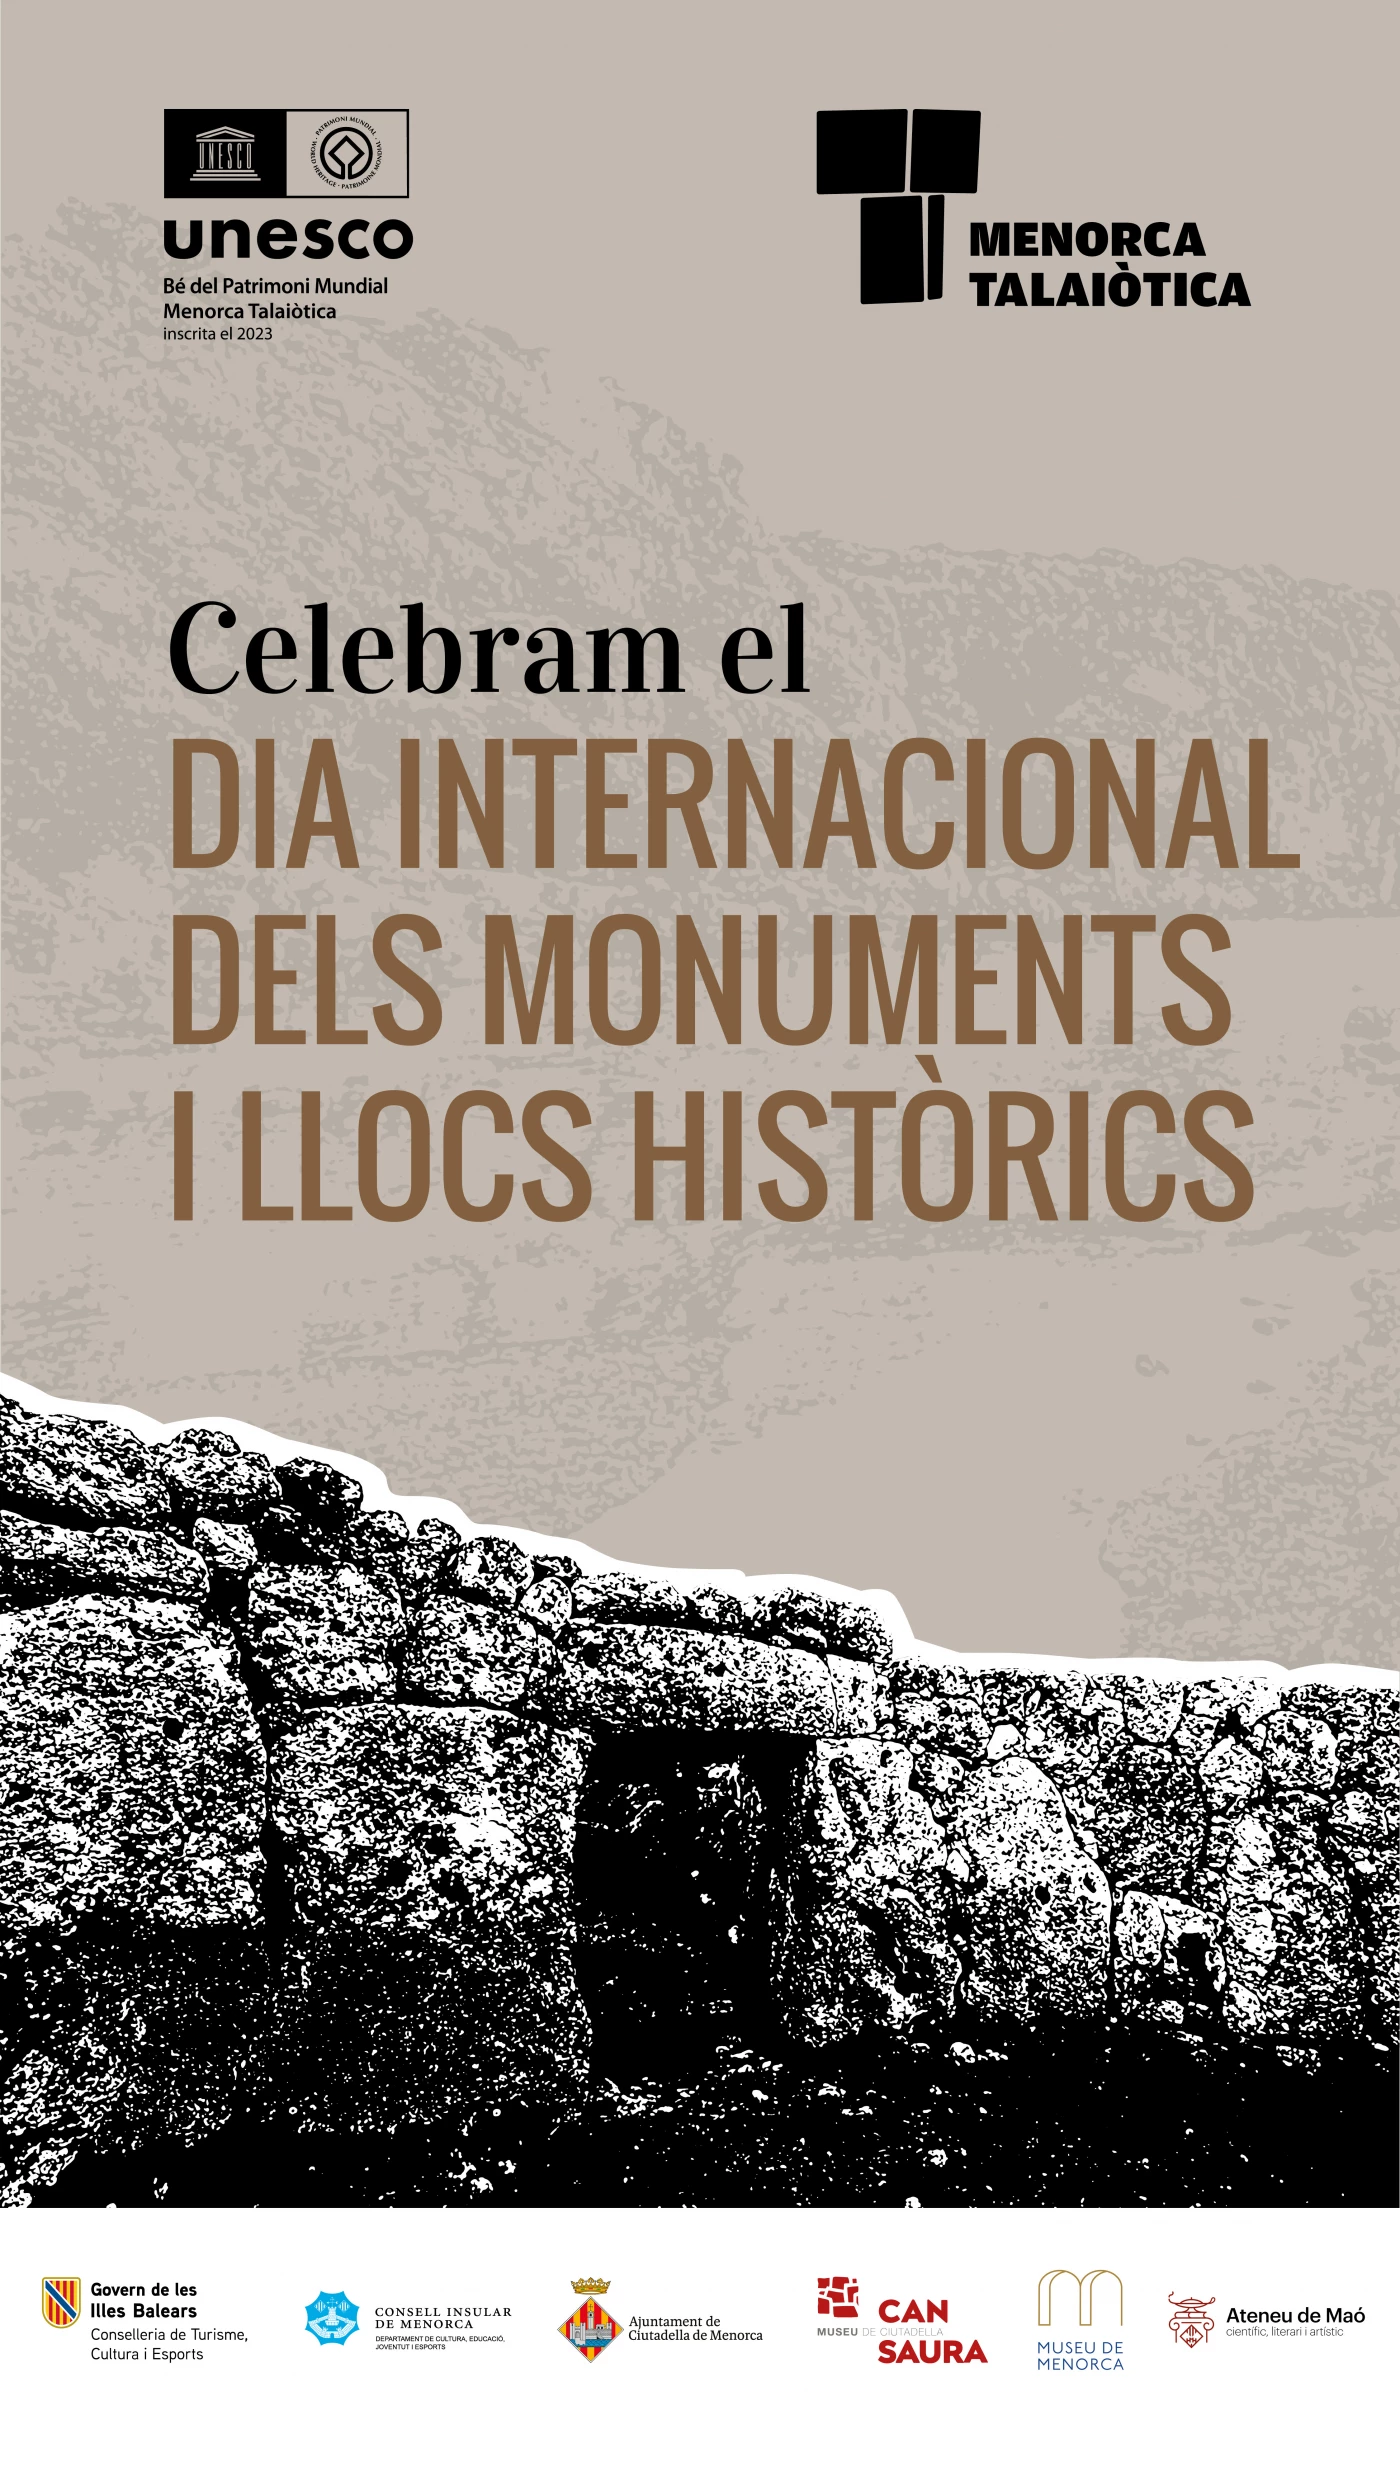 Image of event Celebramos el Día Internacional de los Monumentos y Sitios Históricos